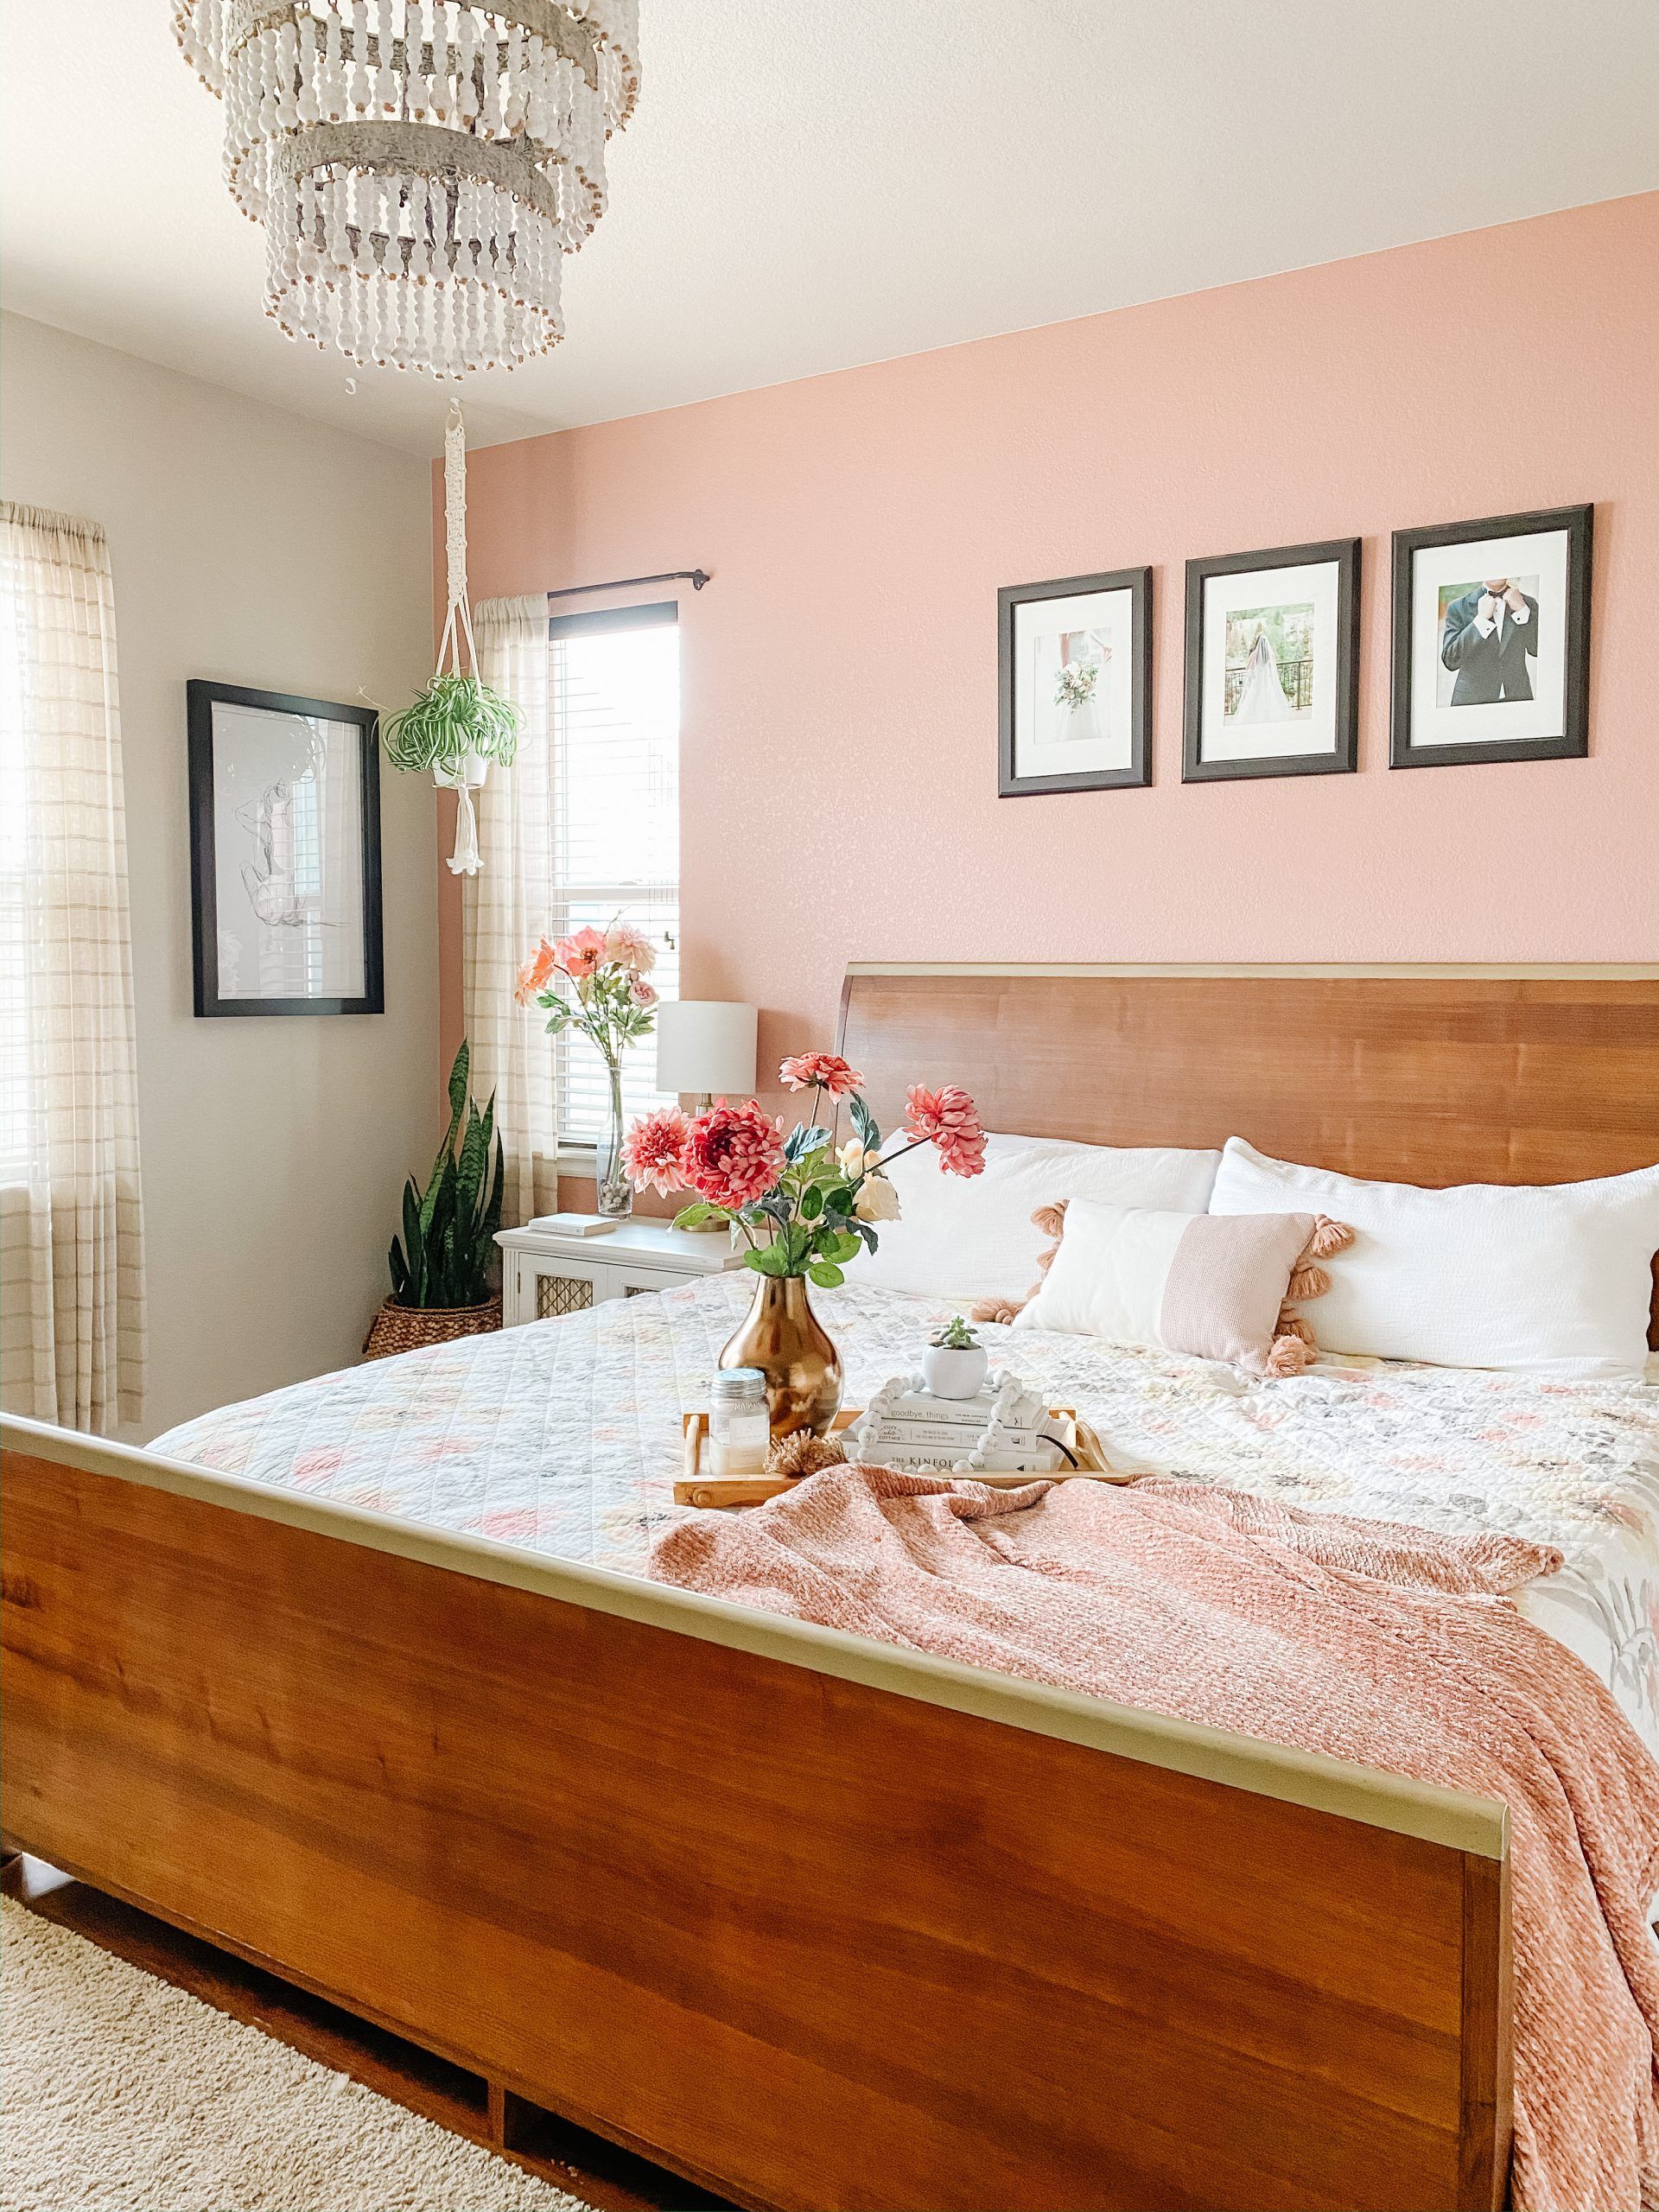 Phòng ngủ siêu ngọt ngào với sơn tường hồng và khung giường gỗ tone màu nâu trầm ấm. Chủ nhân của nó đã khéo léo kết hợp với các lọ hoa tươi, chậu cây lưỡi hổ, cỏ lan chi,... để bầu không khí sinh động và thanh lọc không khí tốt hơn.